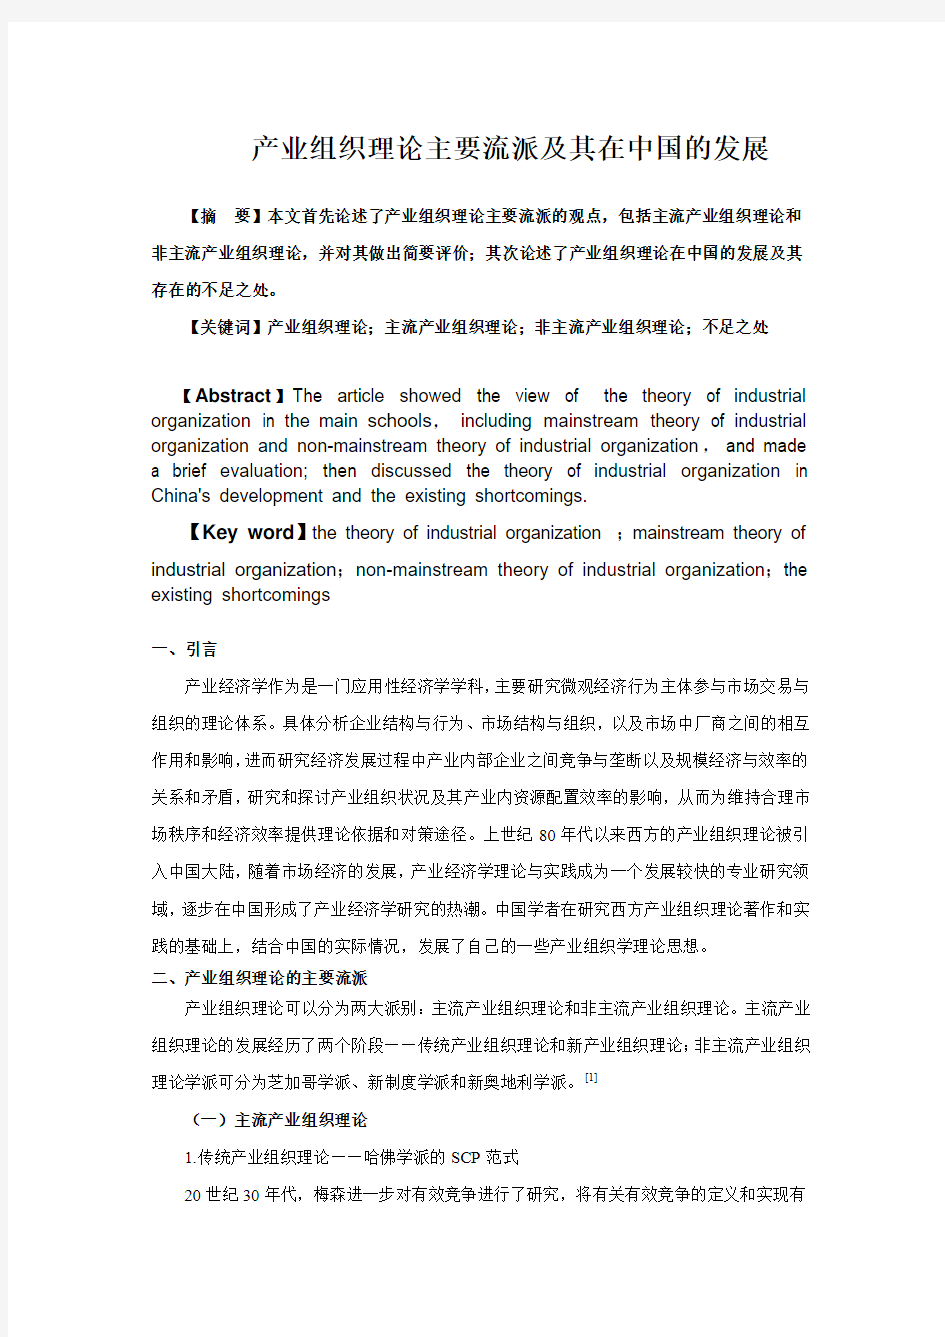 产业组织理论主要流派及其在中国的发展--肖殷洪